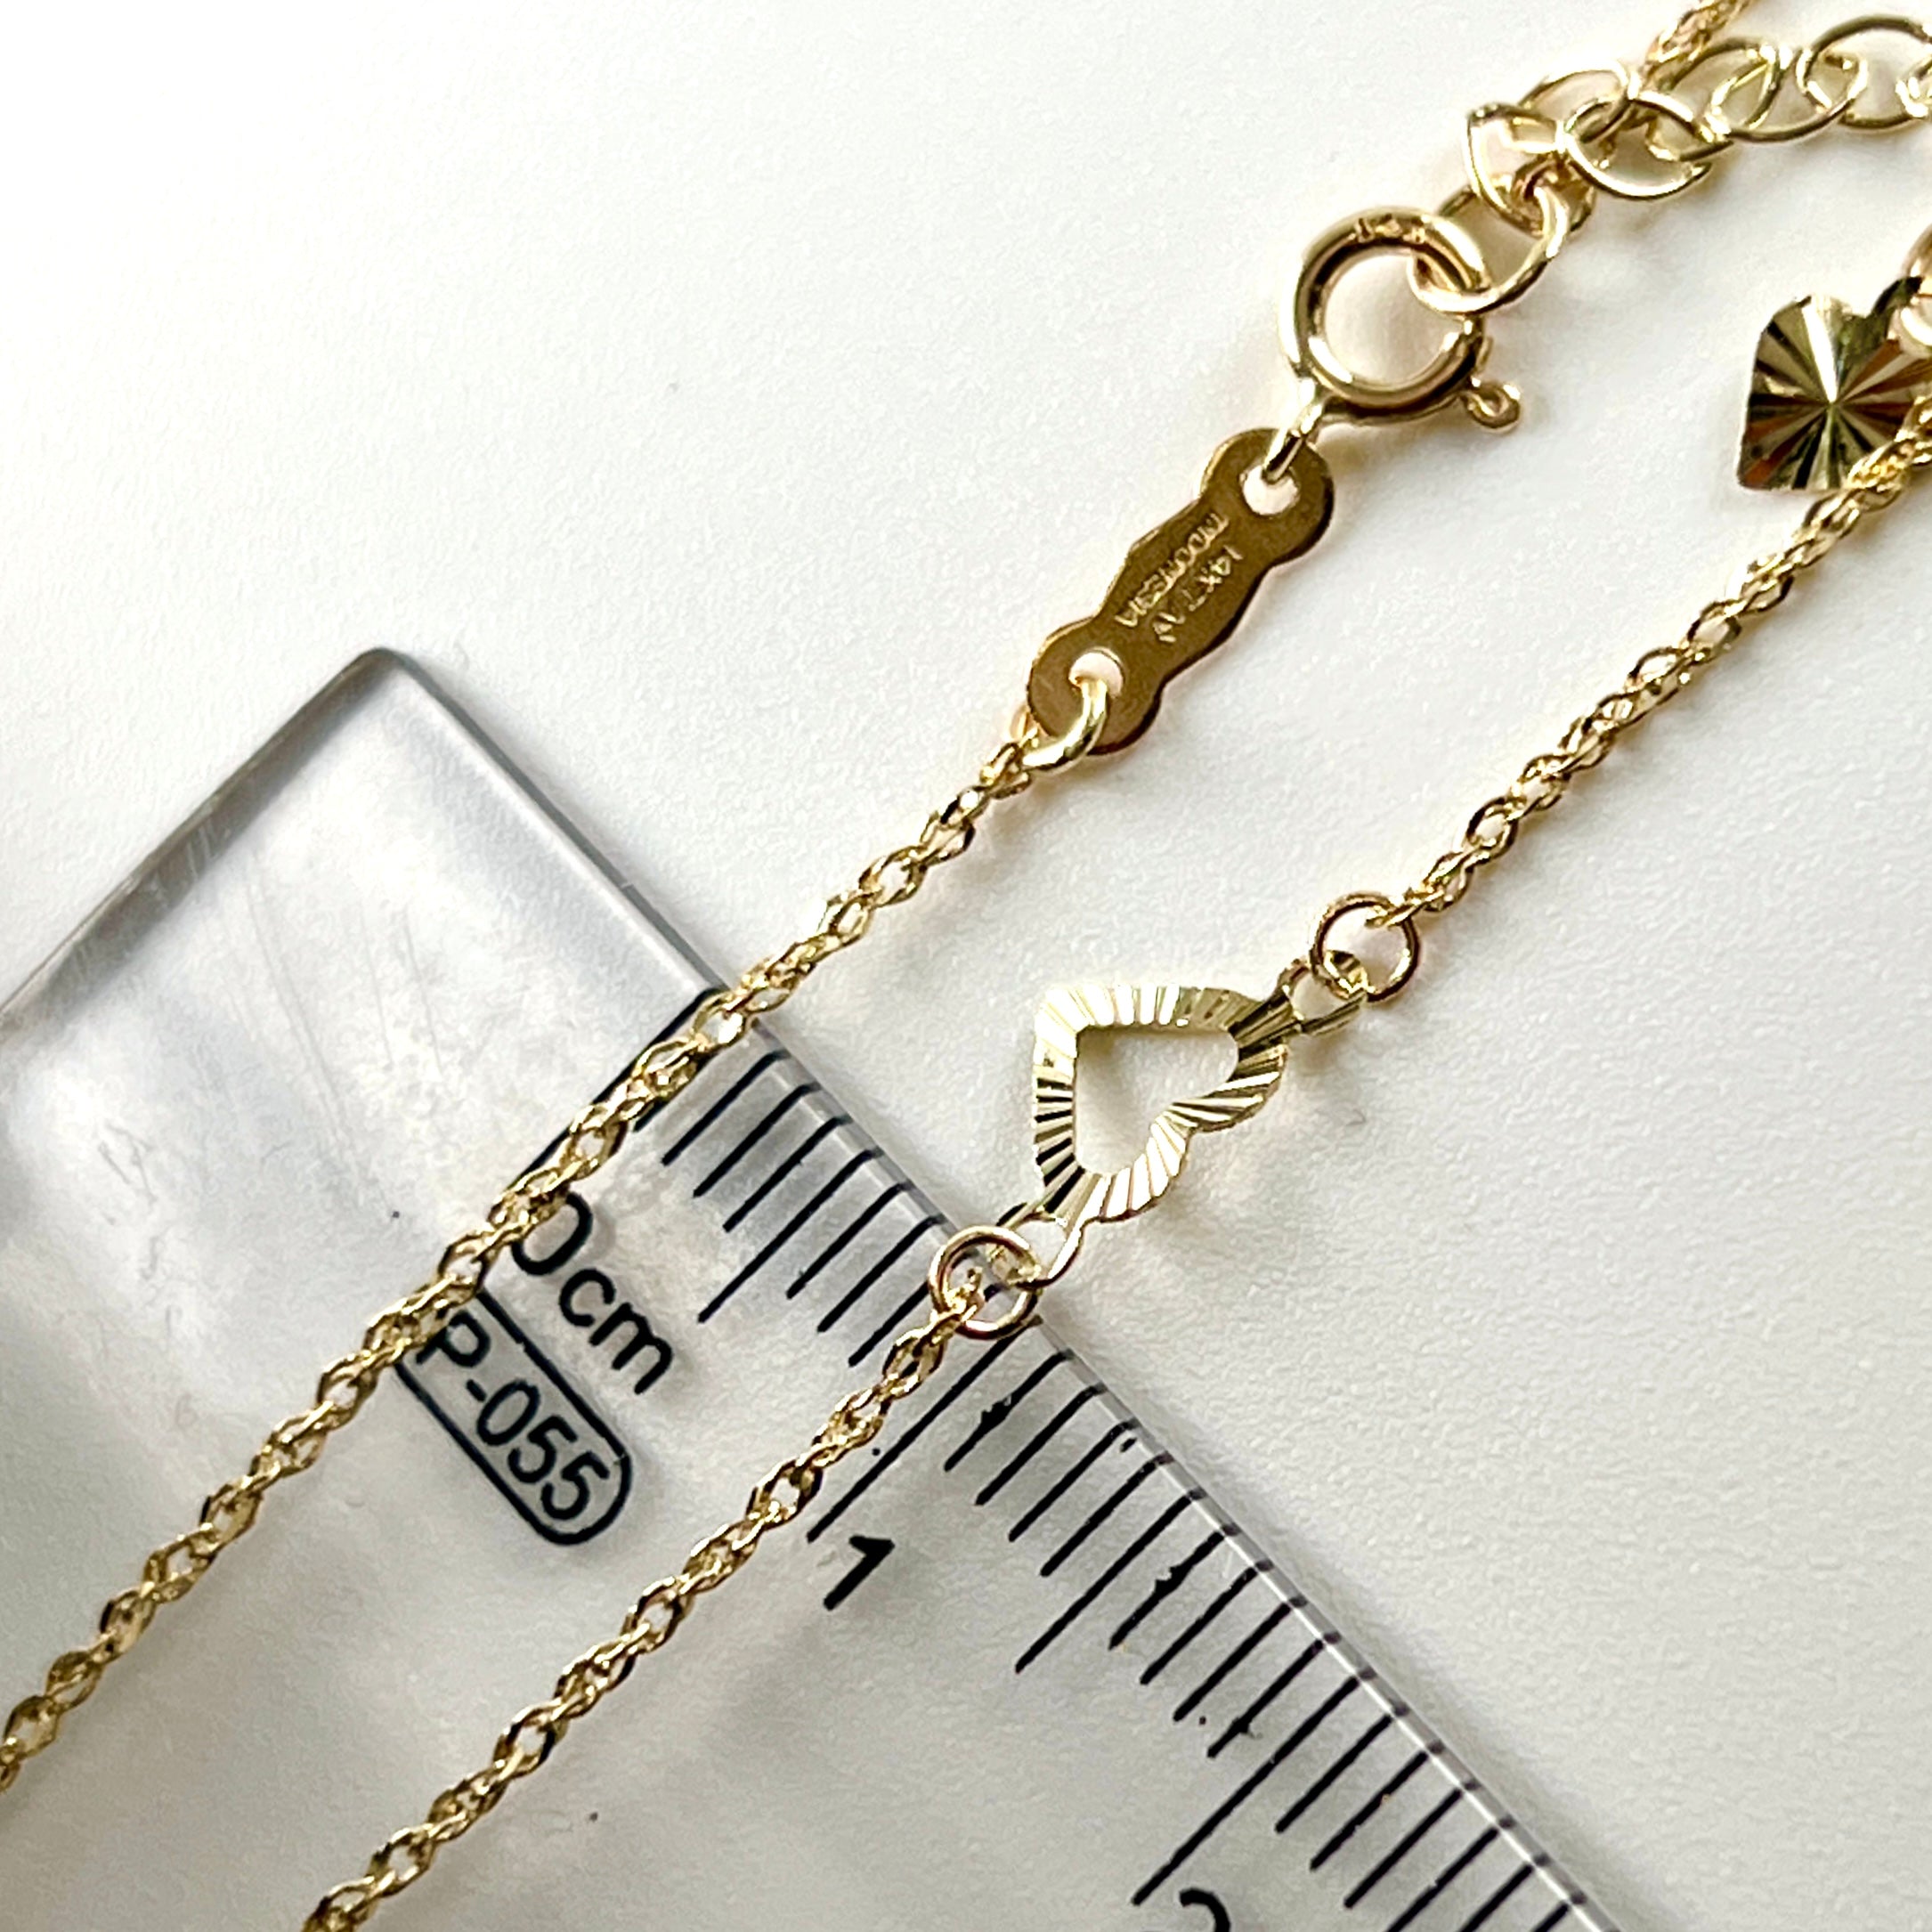 14K Gold 9"-10" Heart Ankle Bracelet